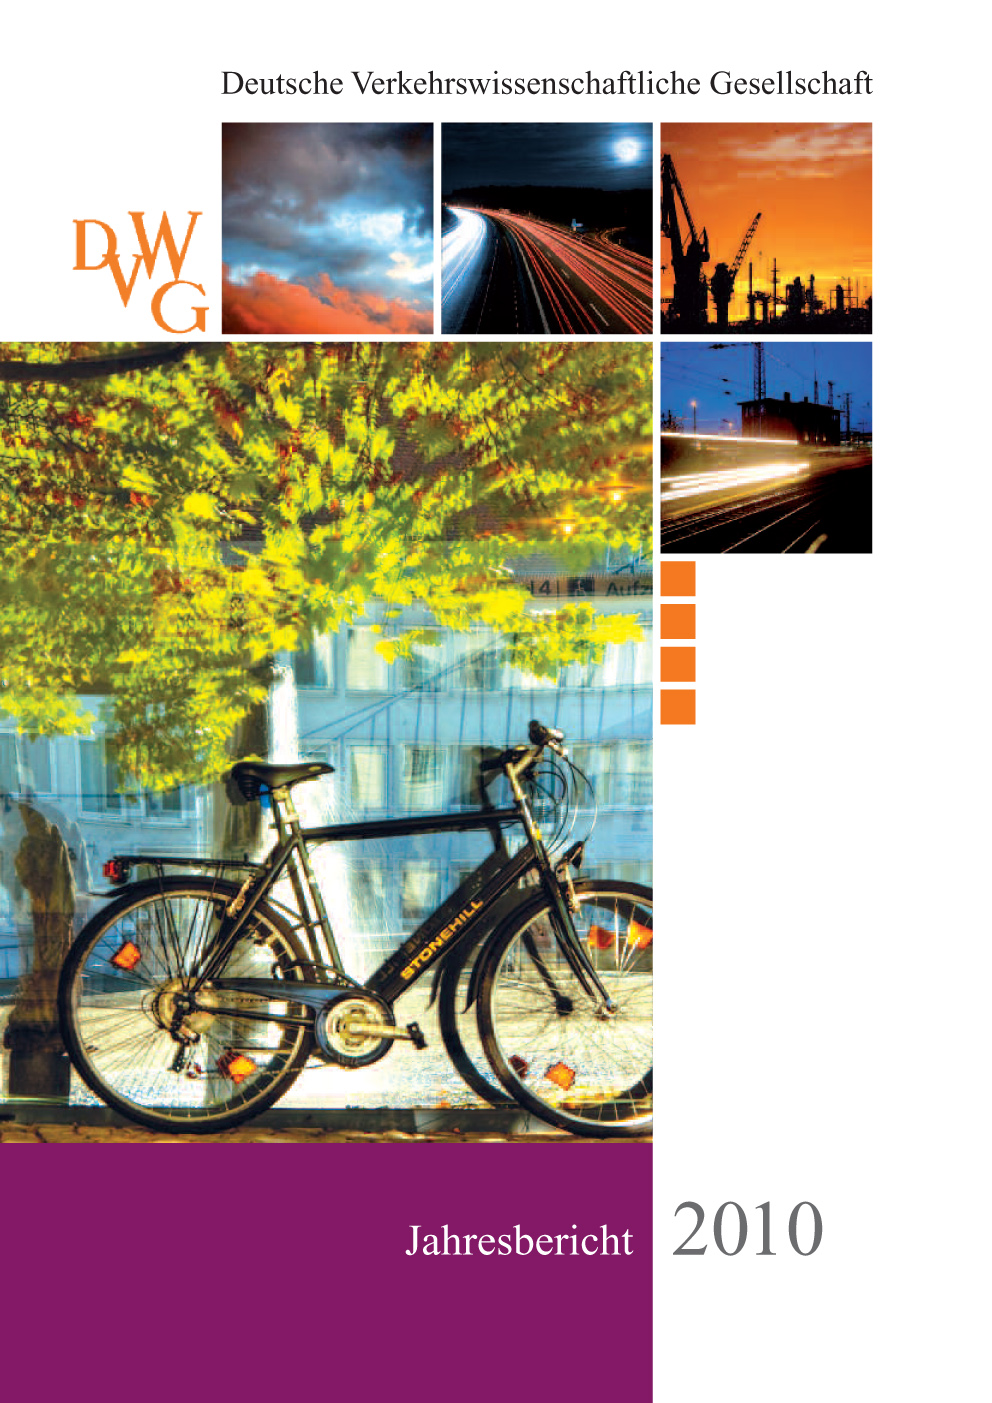 Deckblatt des Jahresberichts der DVWG 2010